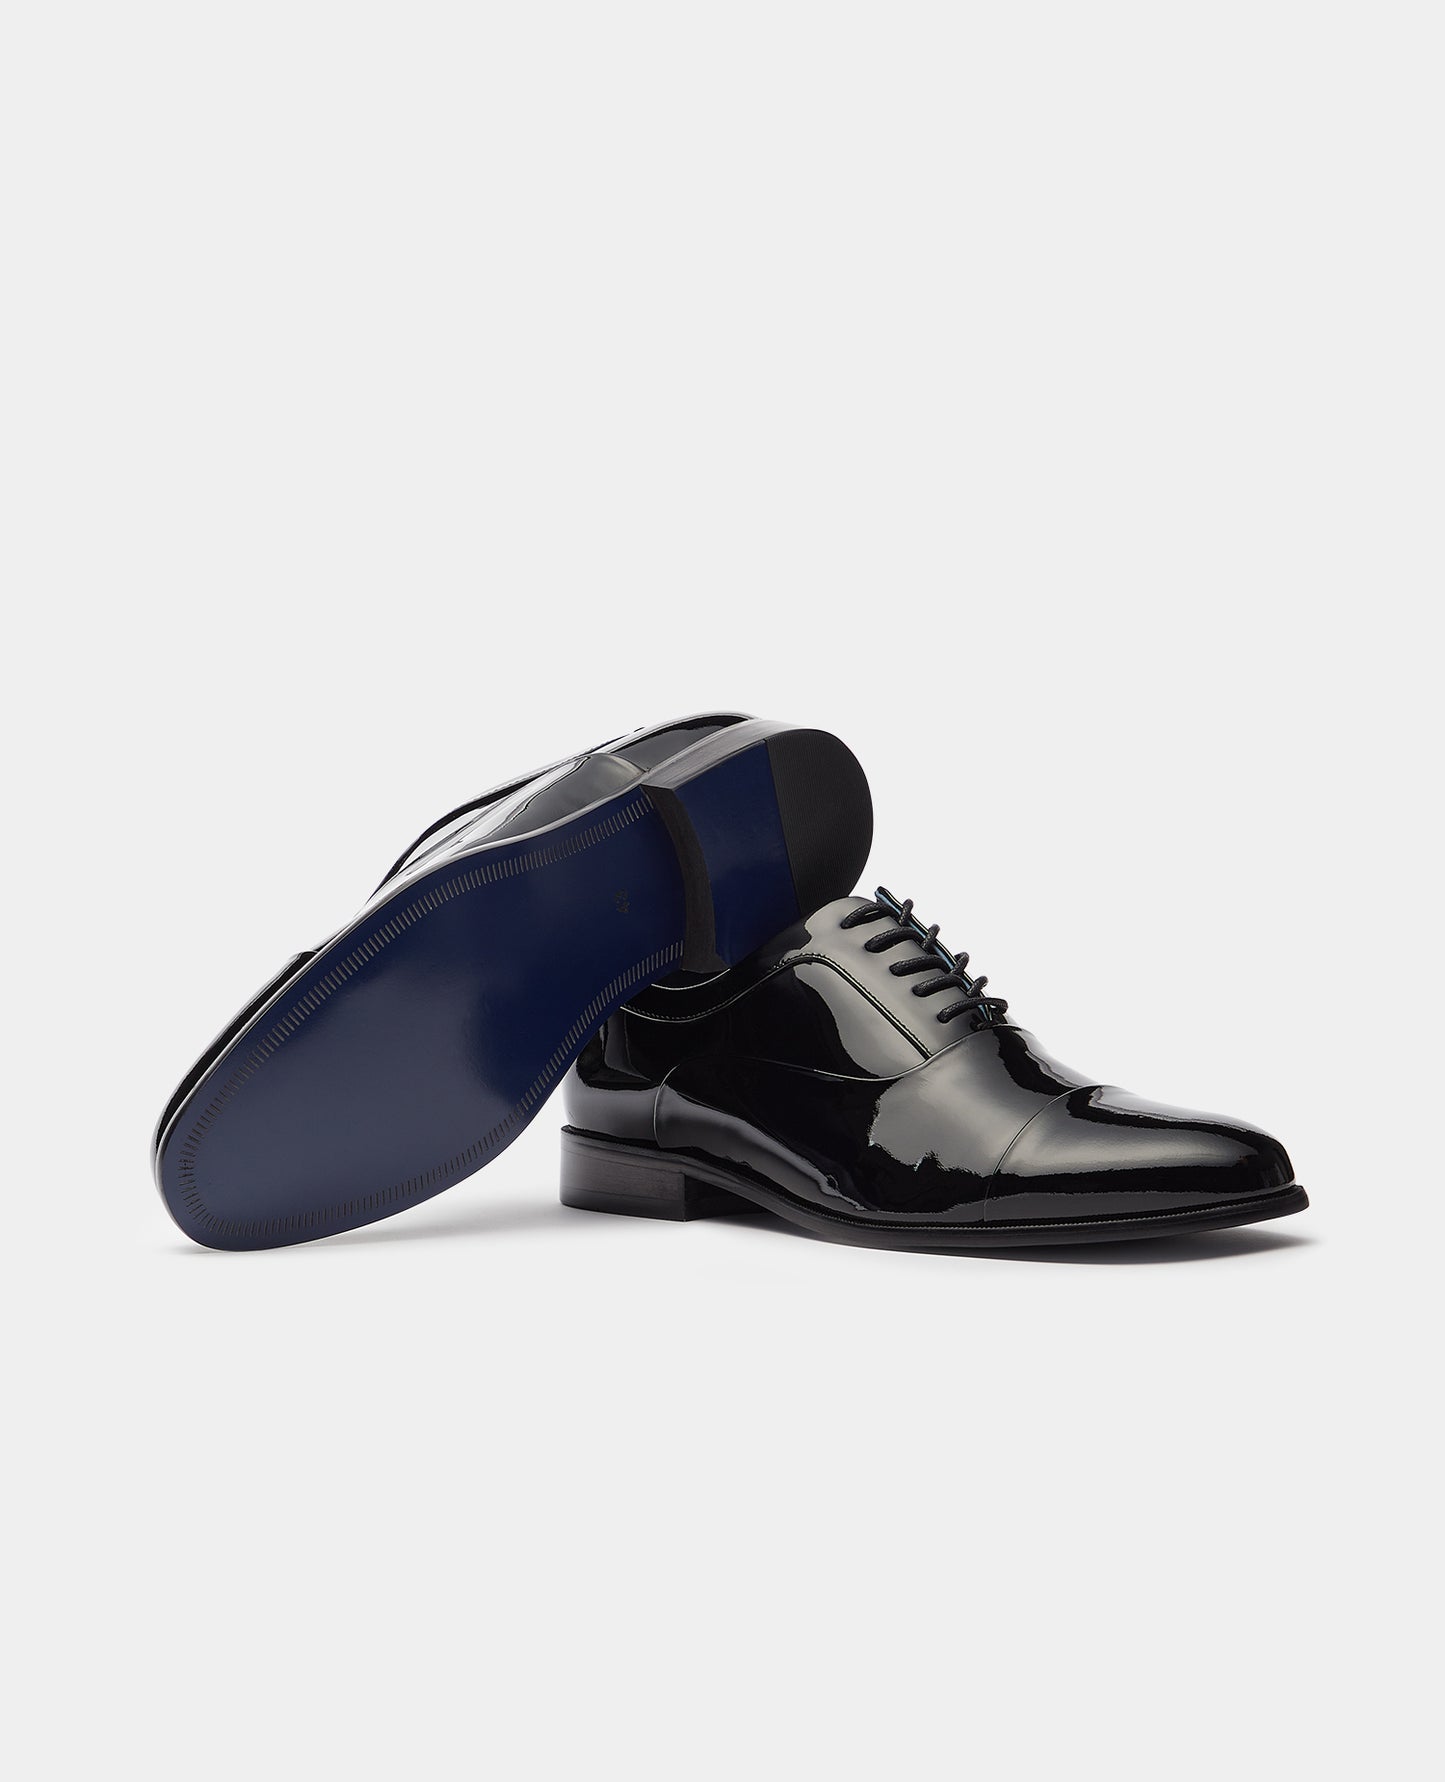 Remus Uomo 02210 00 Black Prato Shoe